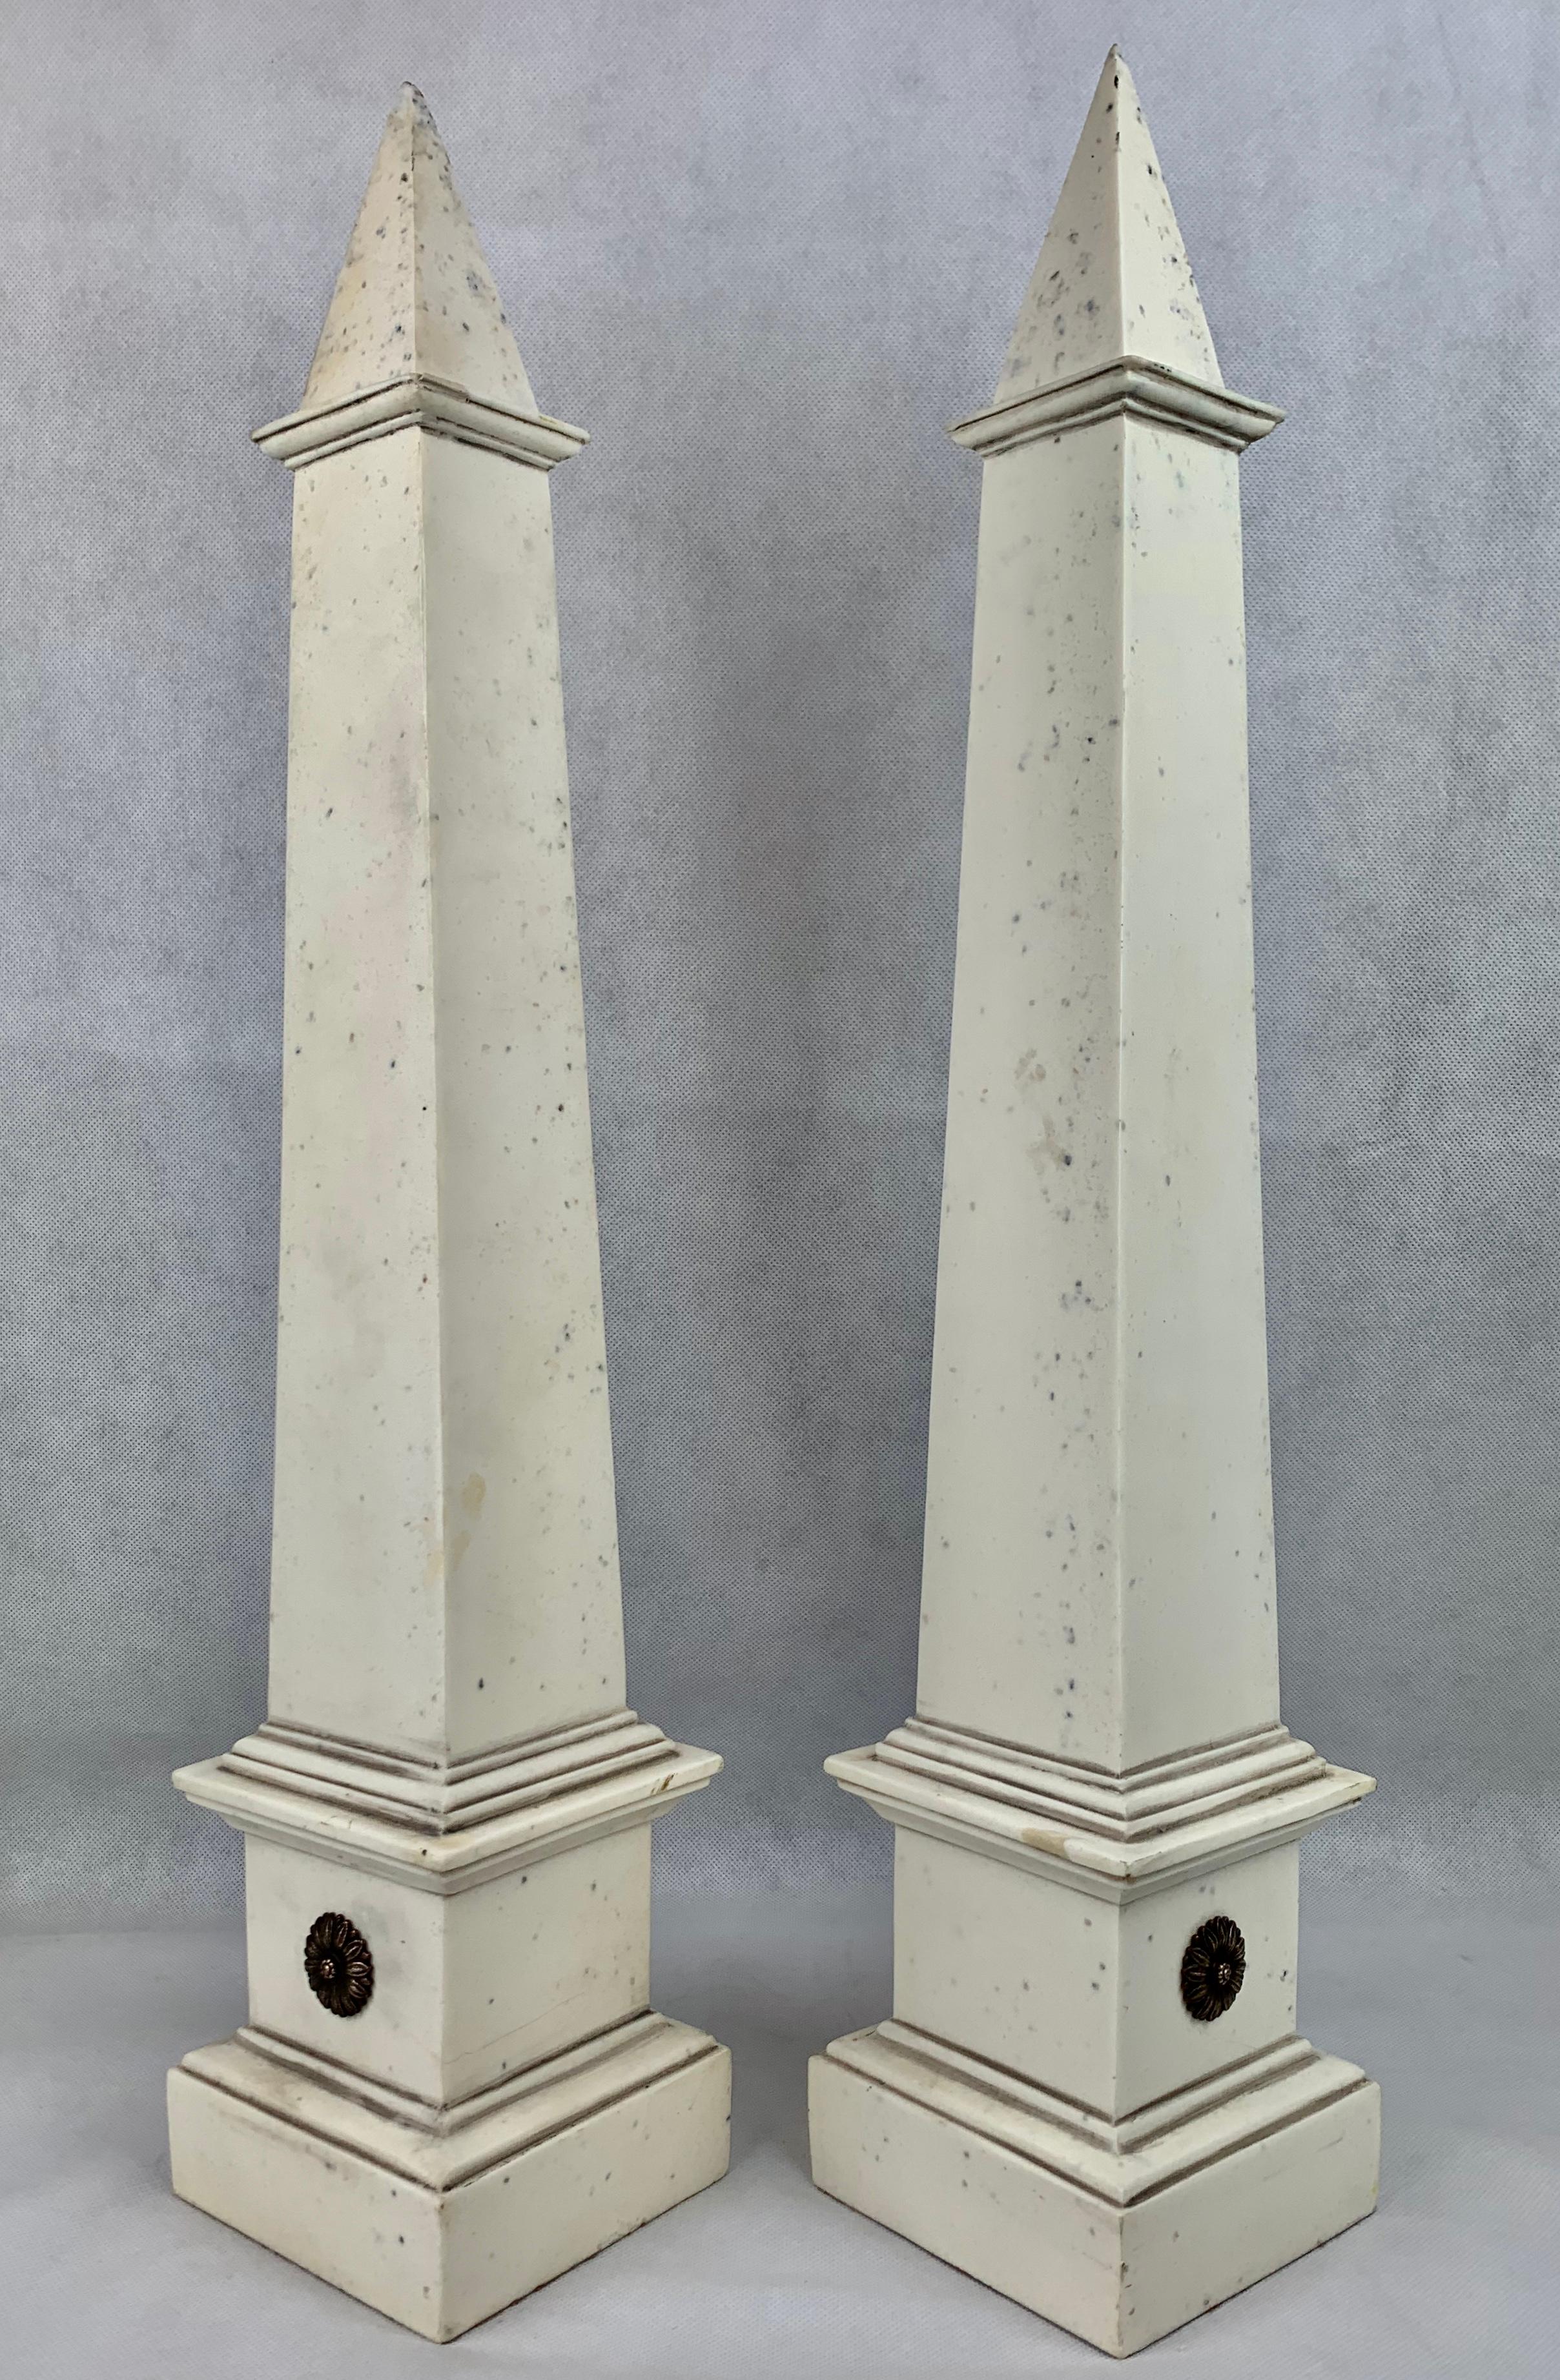 Zwei atemberaubend hohe neoklassizistische Obelisken aus Faux-Ivoire. Bearbeitetes Design, wobei jeder Obelisk ein einzelnes Paar vergoldeter Margeritenblüten zur Verzierung aufweist.
Die Spitze jedes Obelisken ist ein wenig rau.

Height-23.5